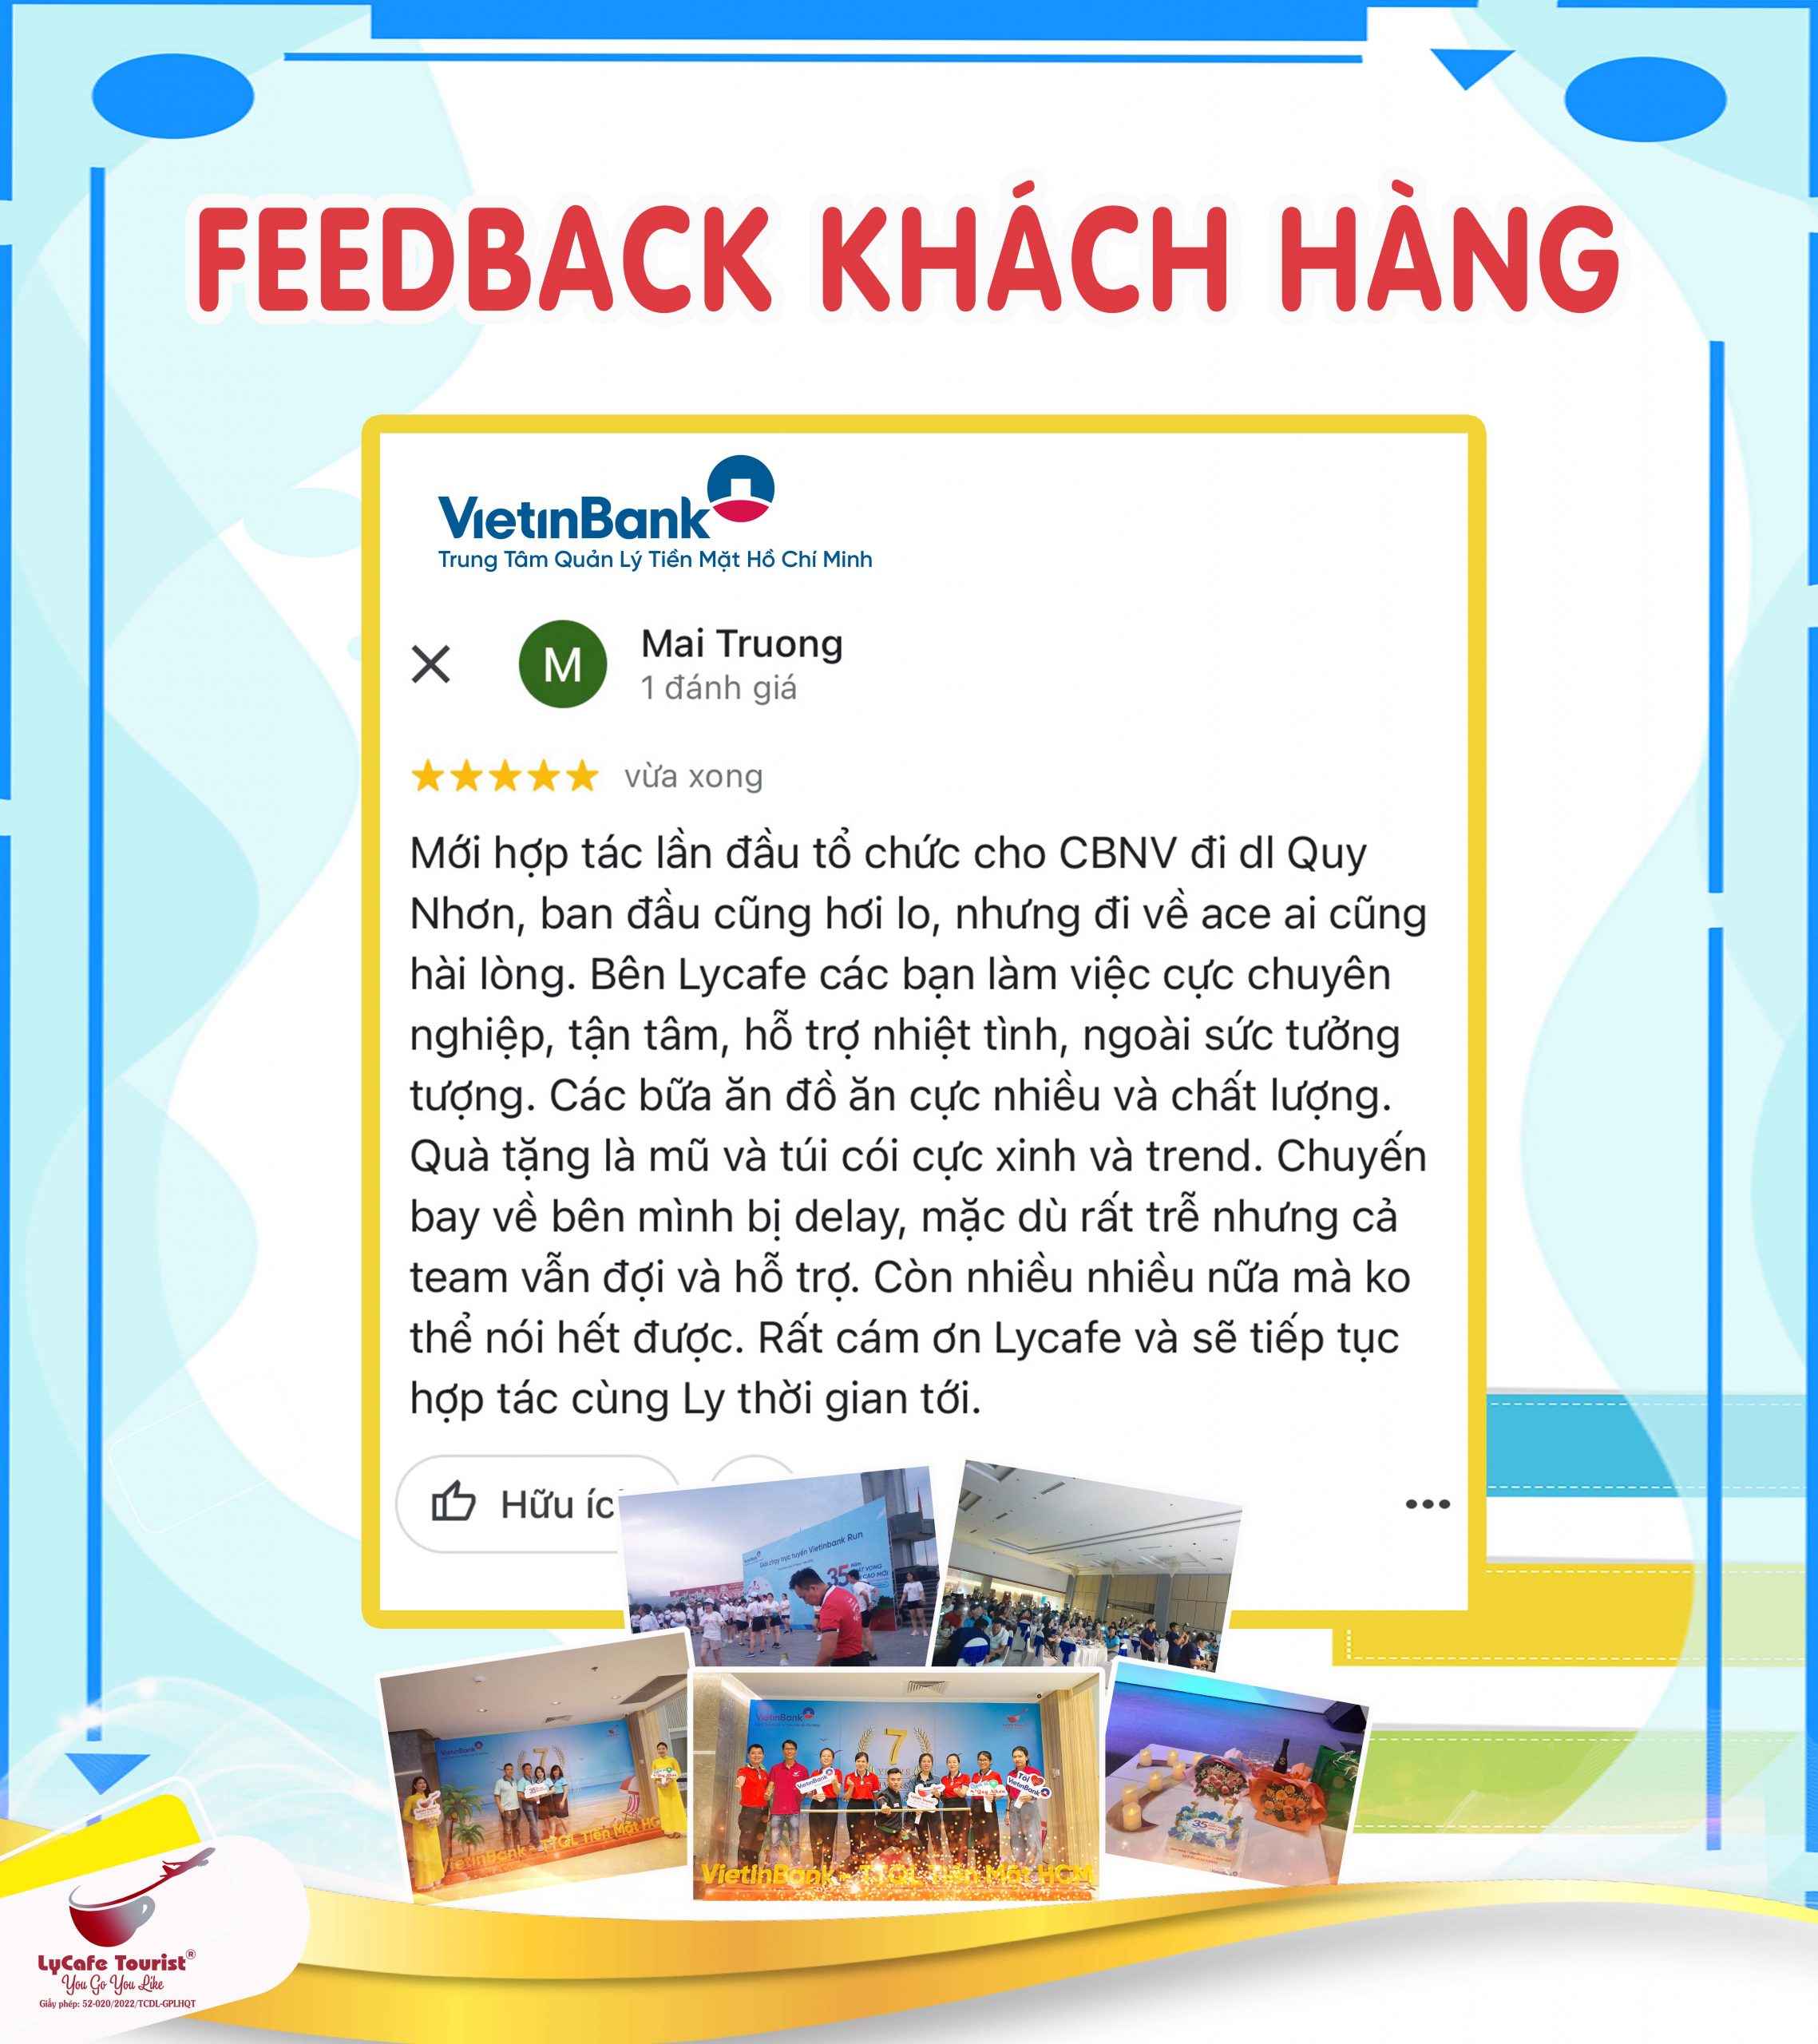 feedback khách hàng - vietinbank - trung tâm quản lý tiền mặt hồ chí minh